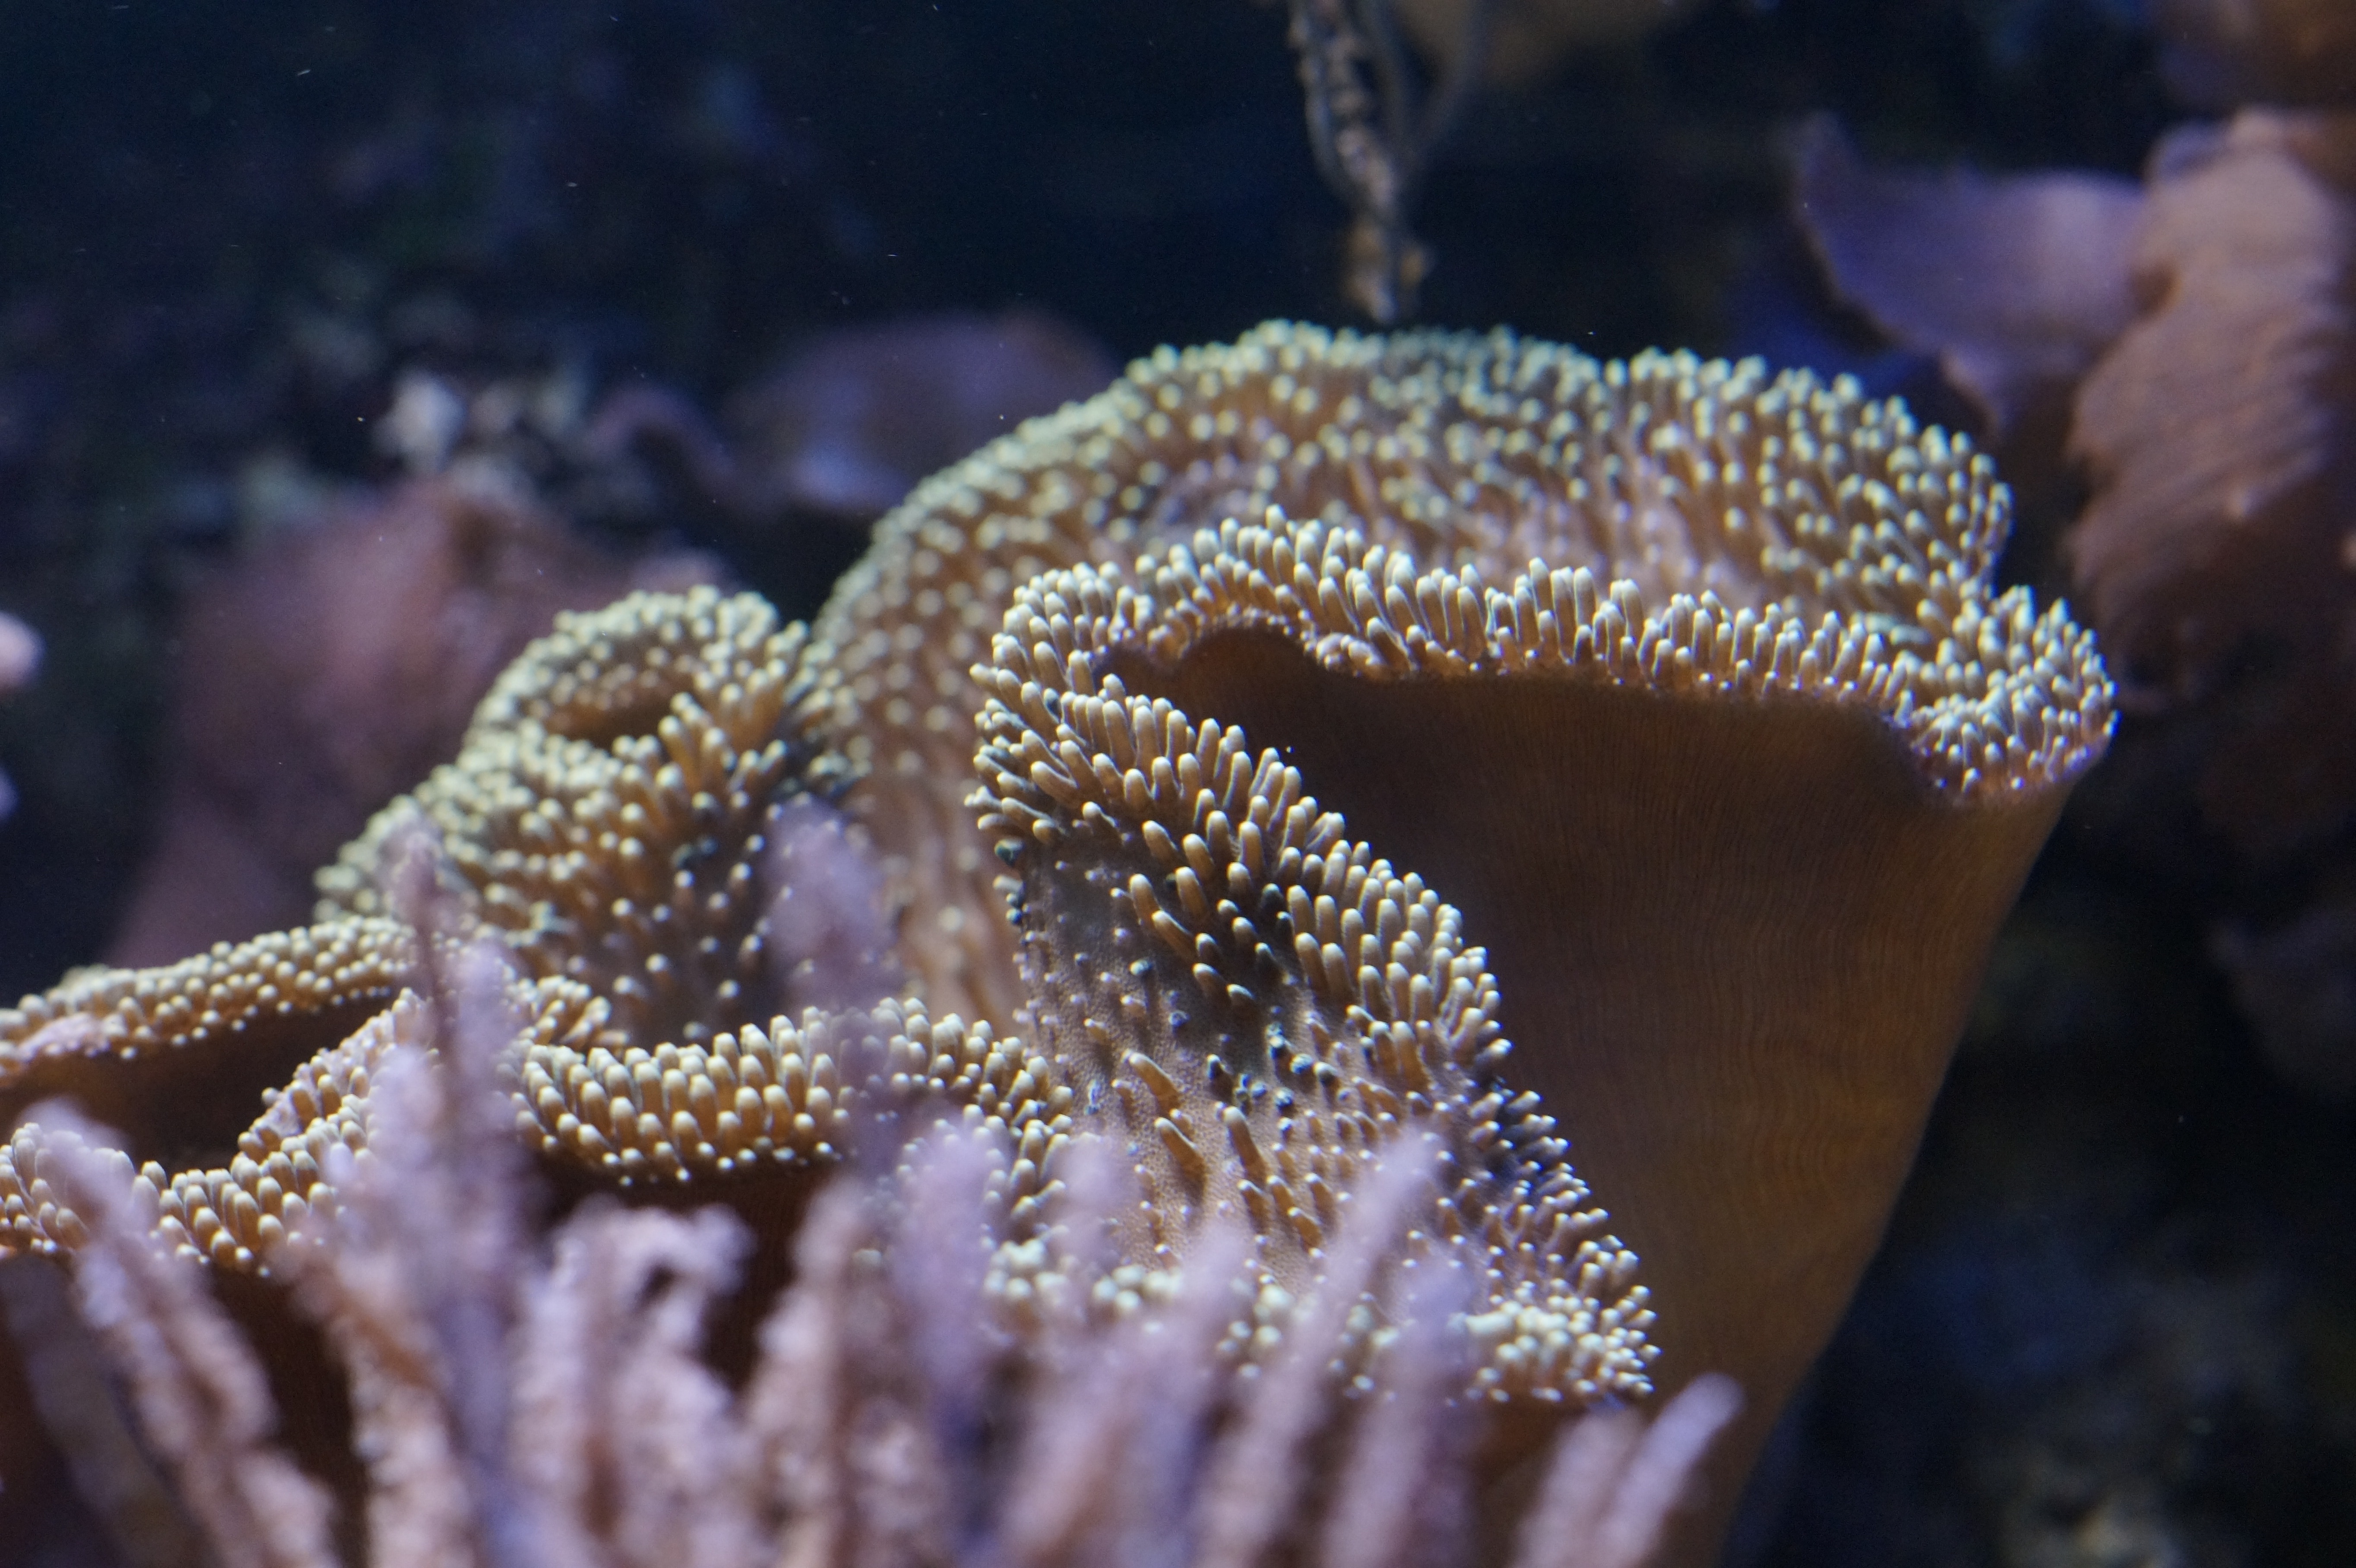 Ocean, Invertebrates, Coral, Mollusk, underwater, one animal